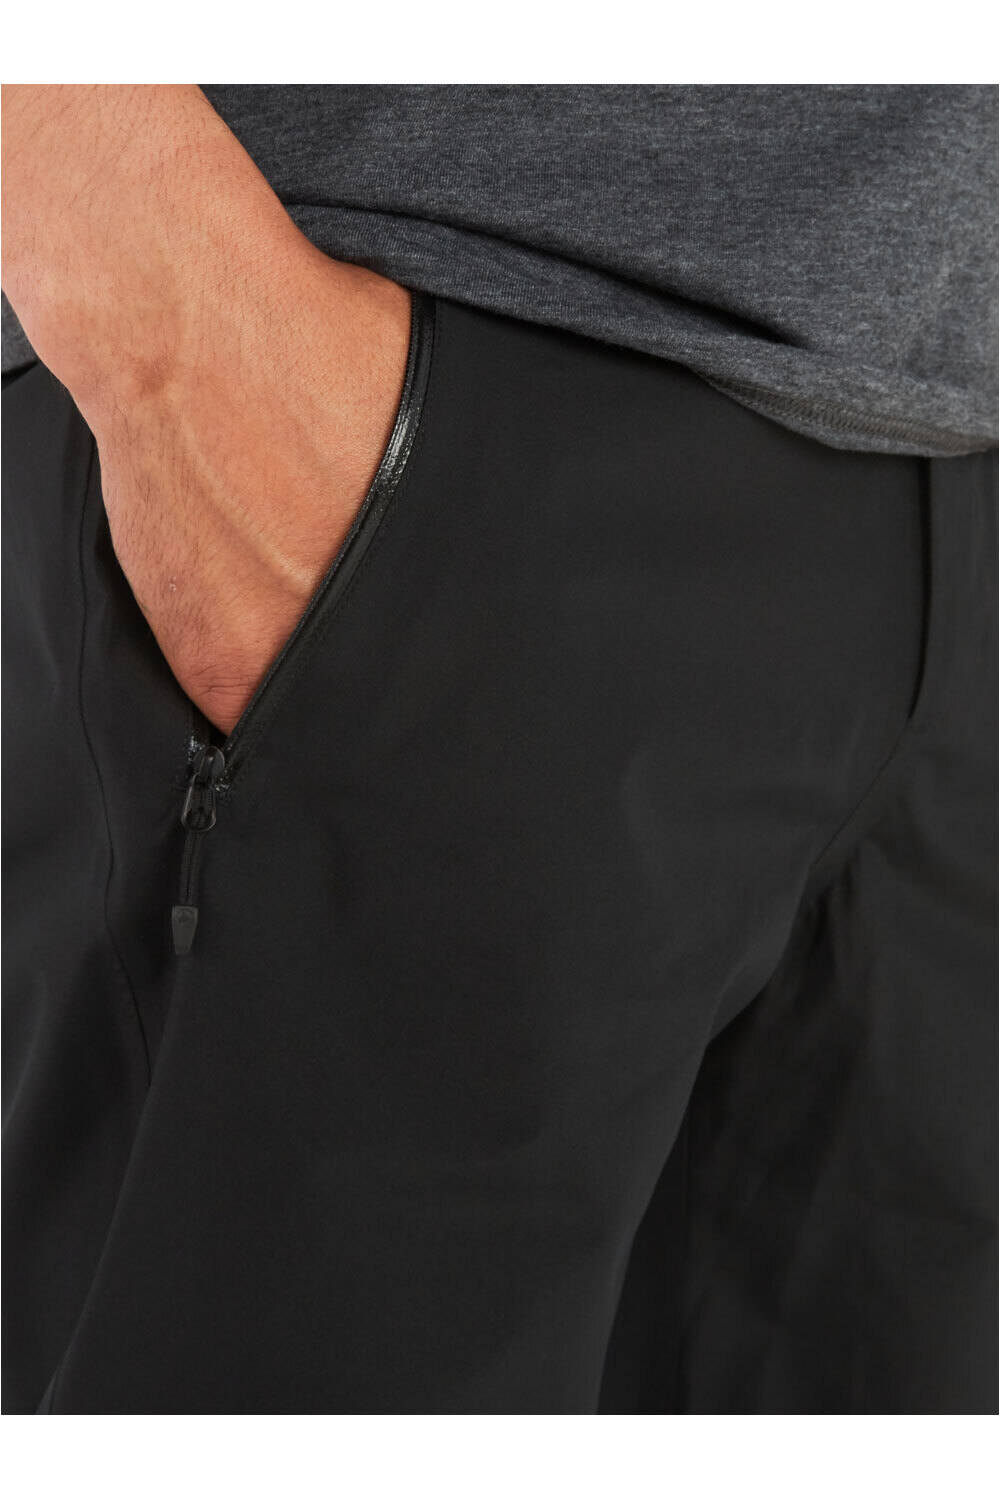 Marmot pantalón impermeable hombre MINIMALIST GORE TEX PANT vista detalle